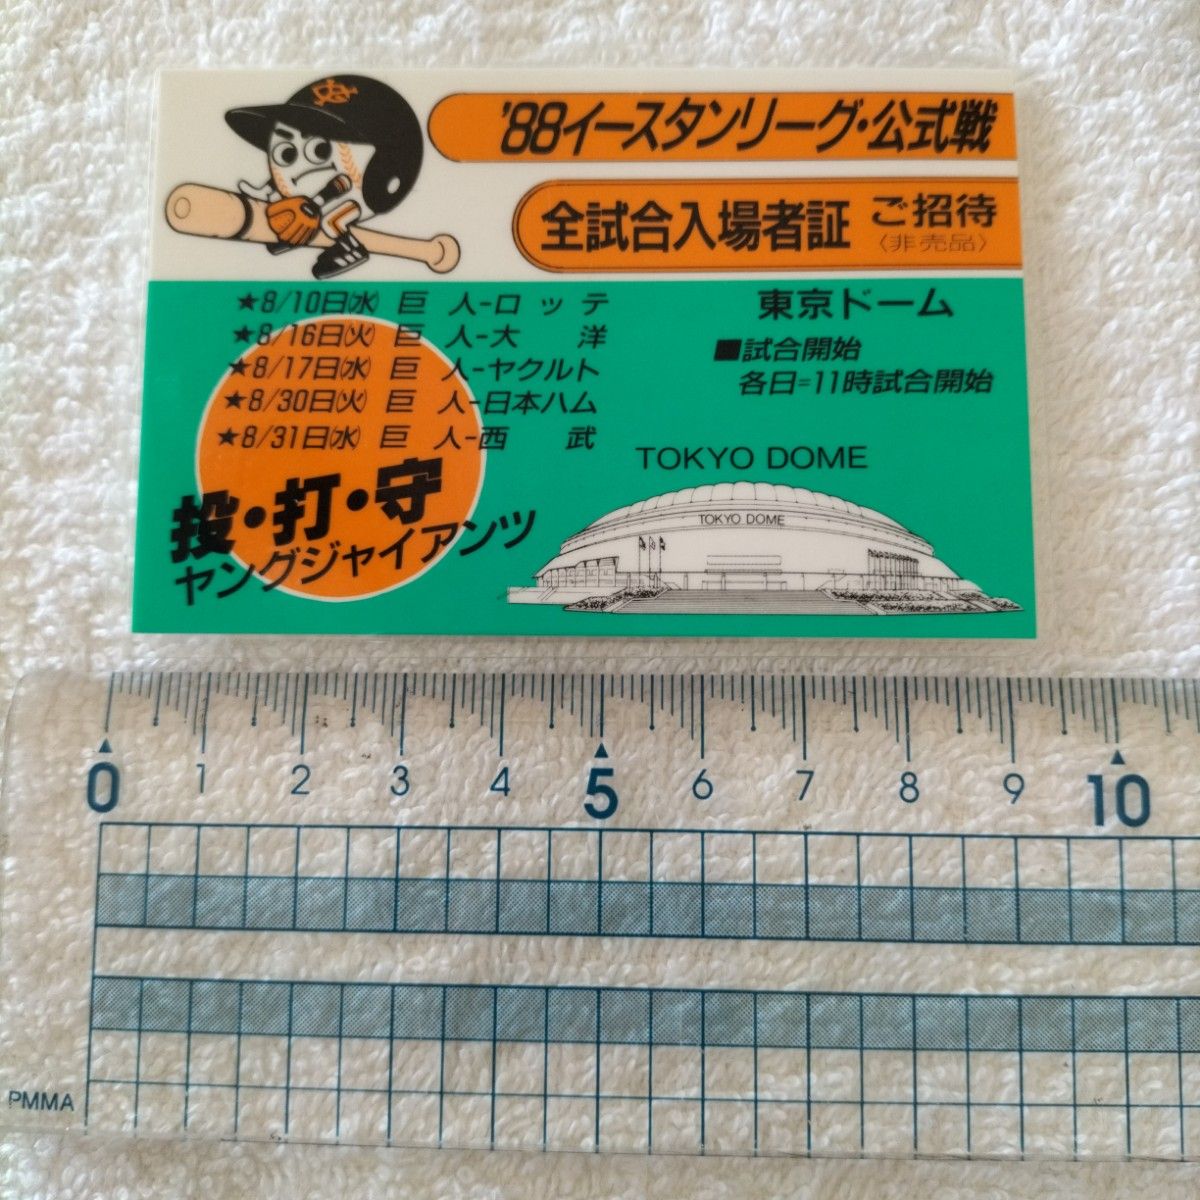 '88イースタンリーグ・公式戦 全試合入場者証 東京ドーム 非売品招待券